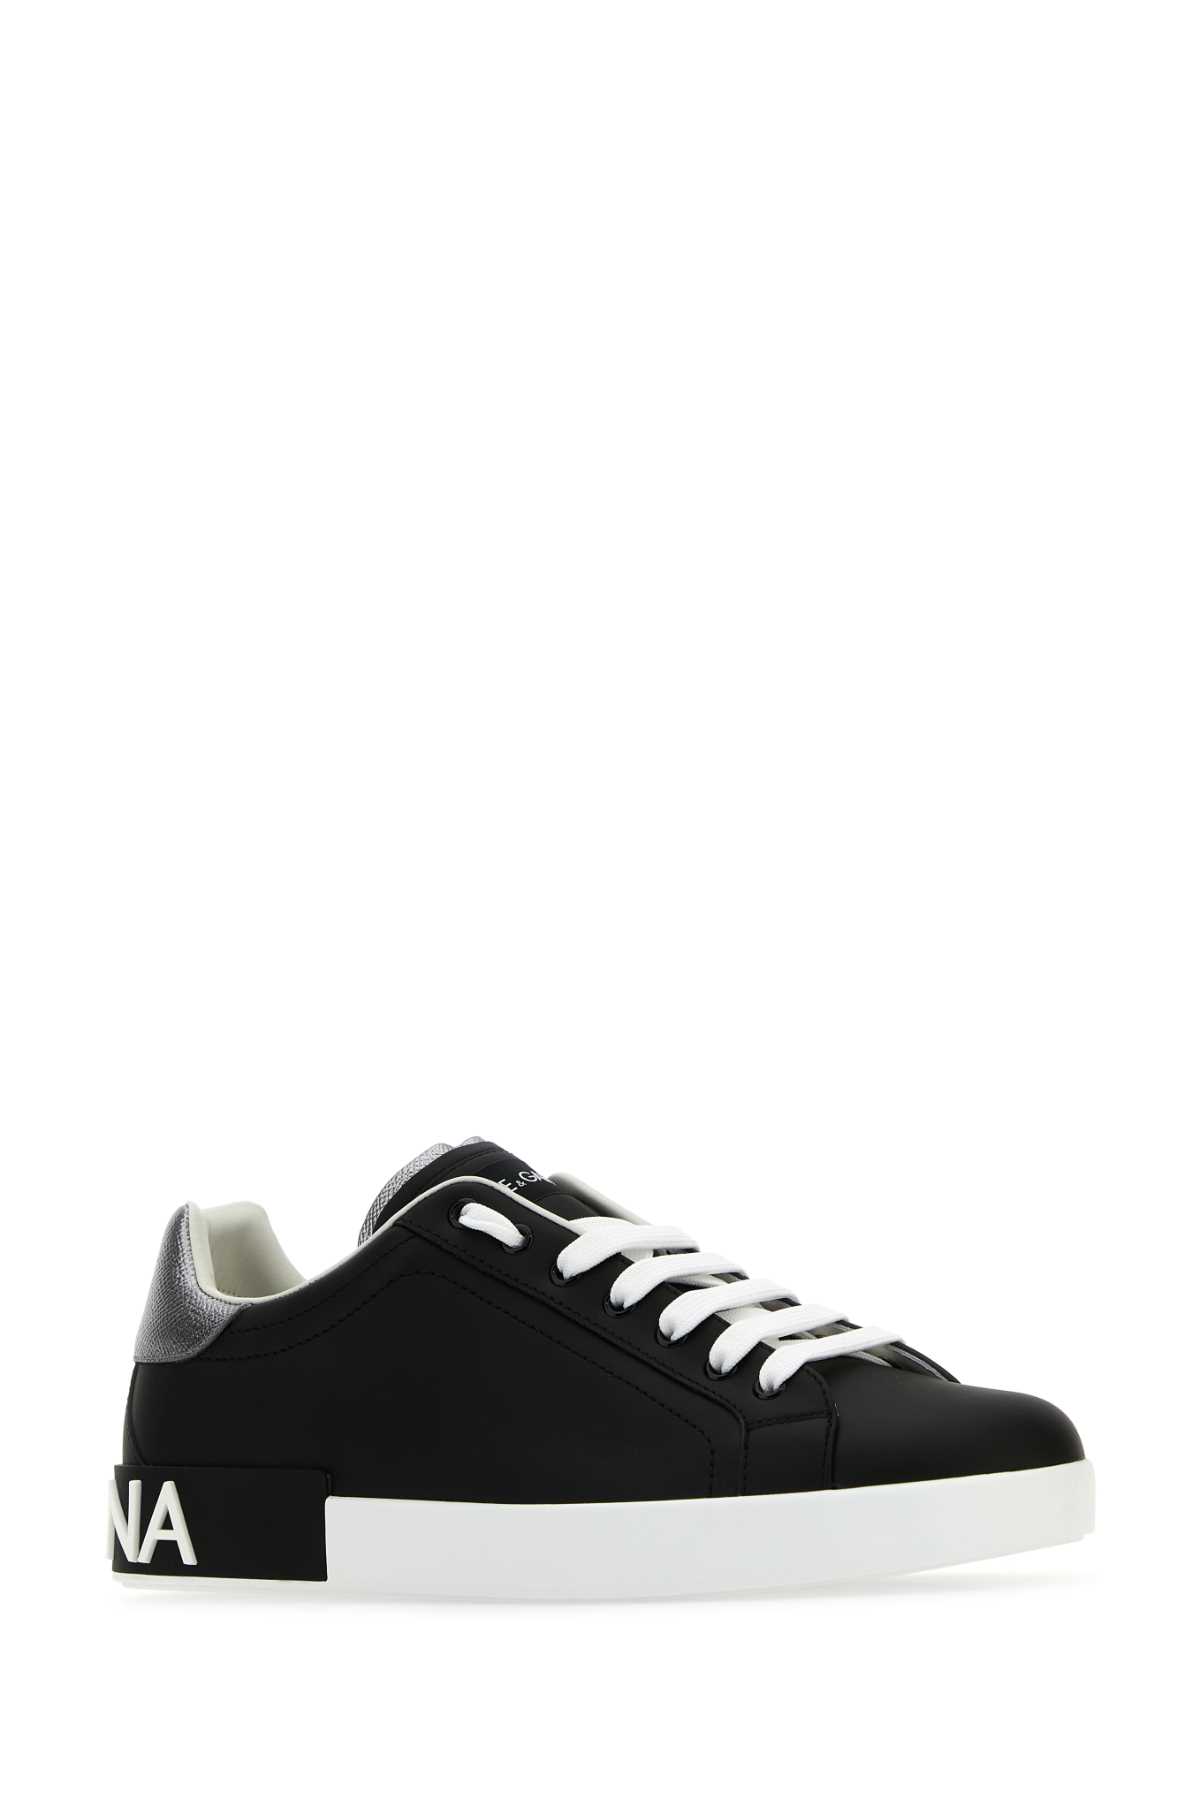 Dolce & Gabbana Black Nappa Leather Portofino Sneakers